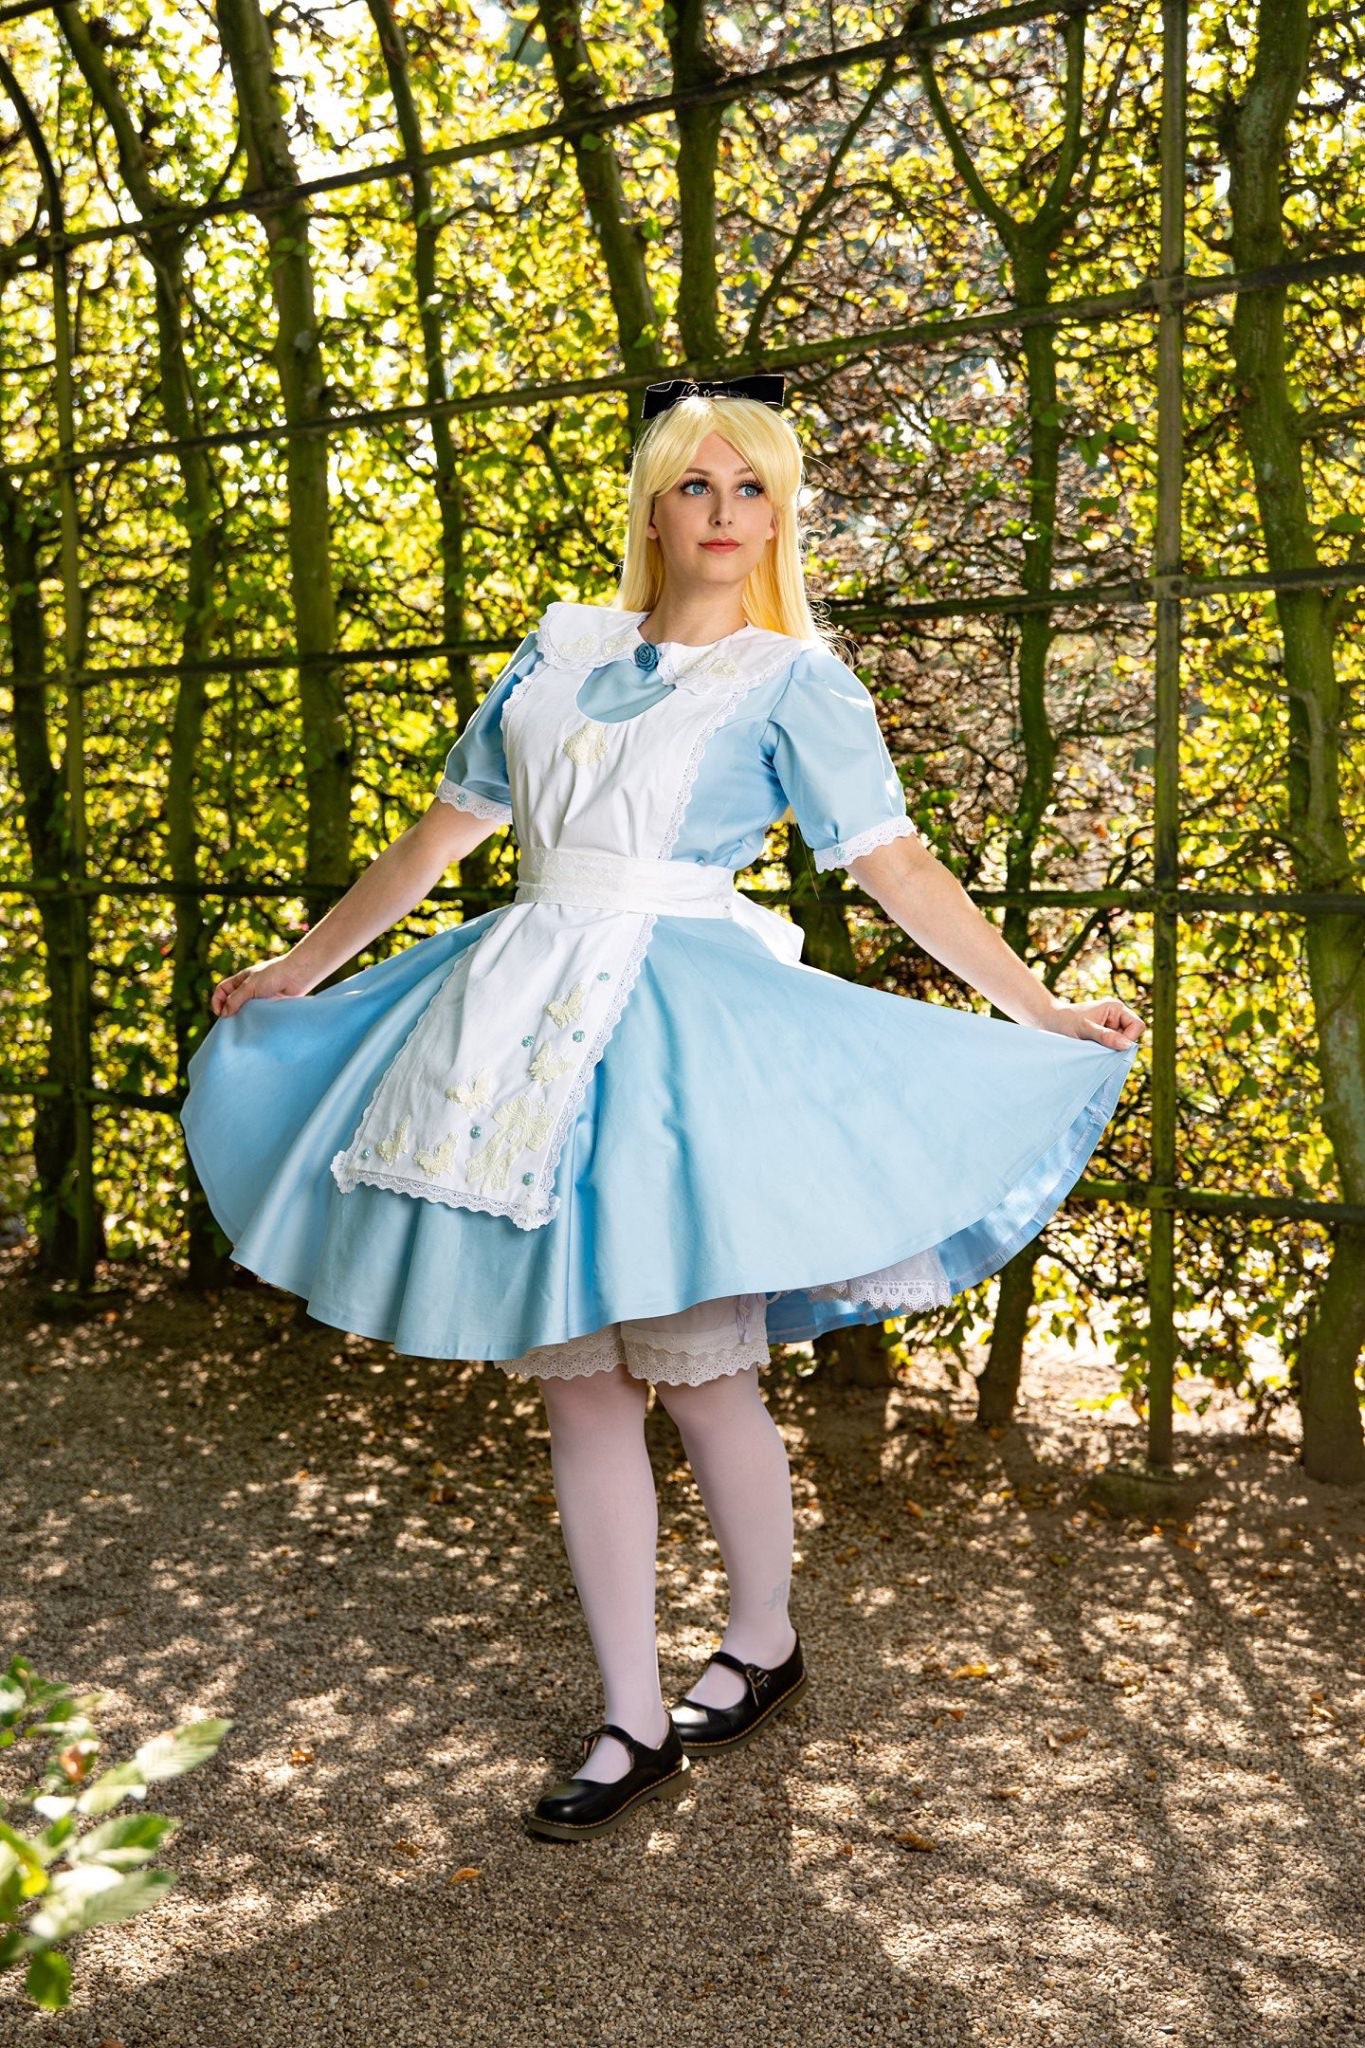 Costume da carnevale Alice nel Paese delle Meraviglie Originale Online